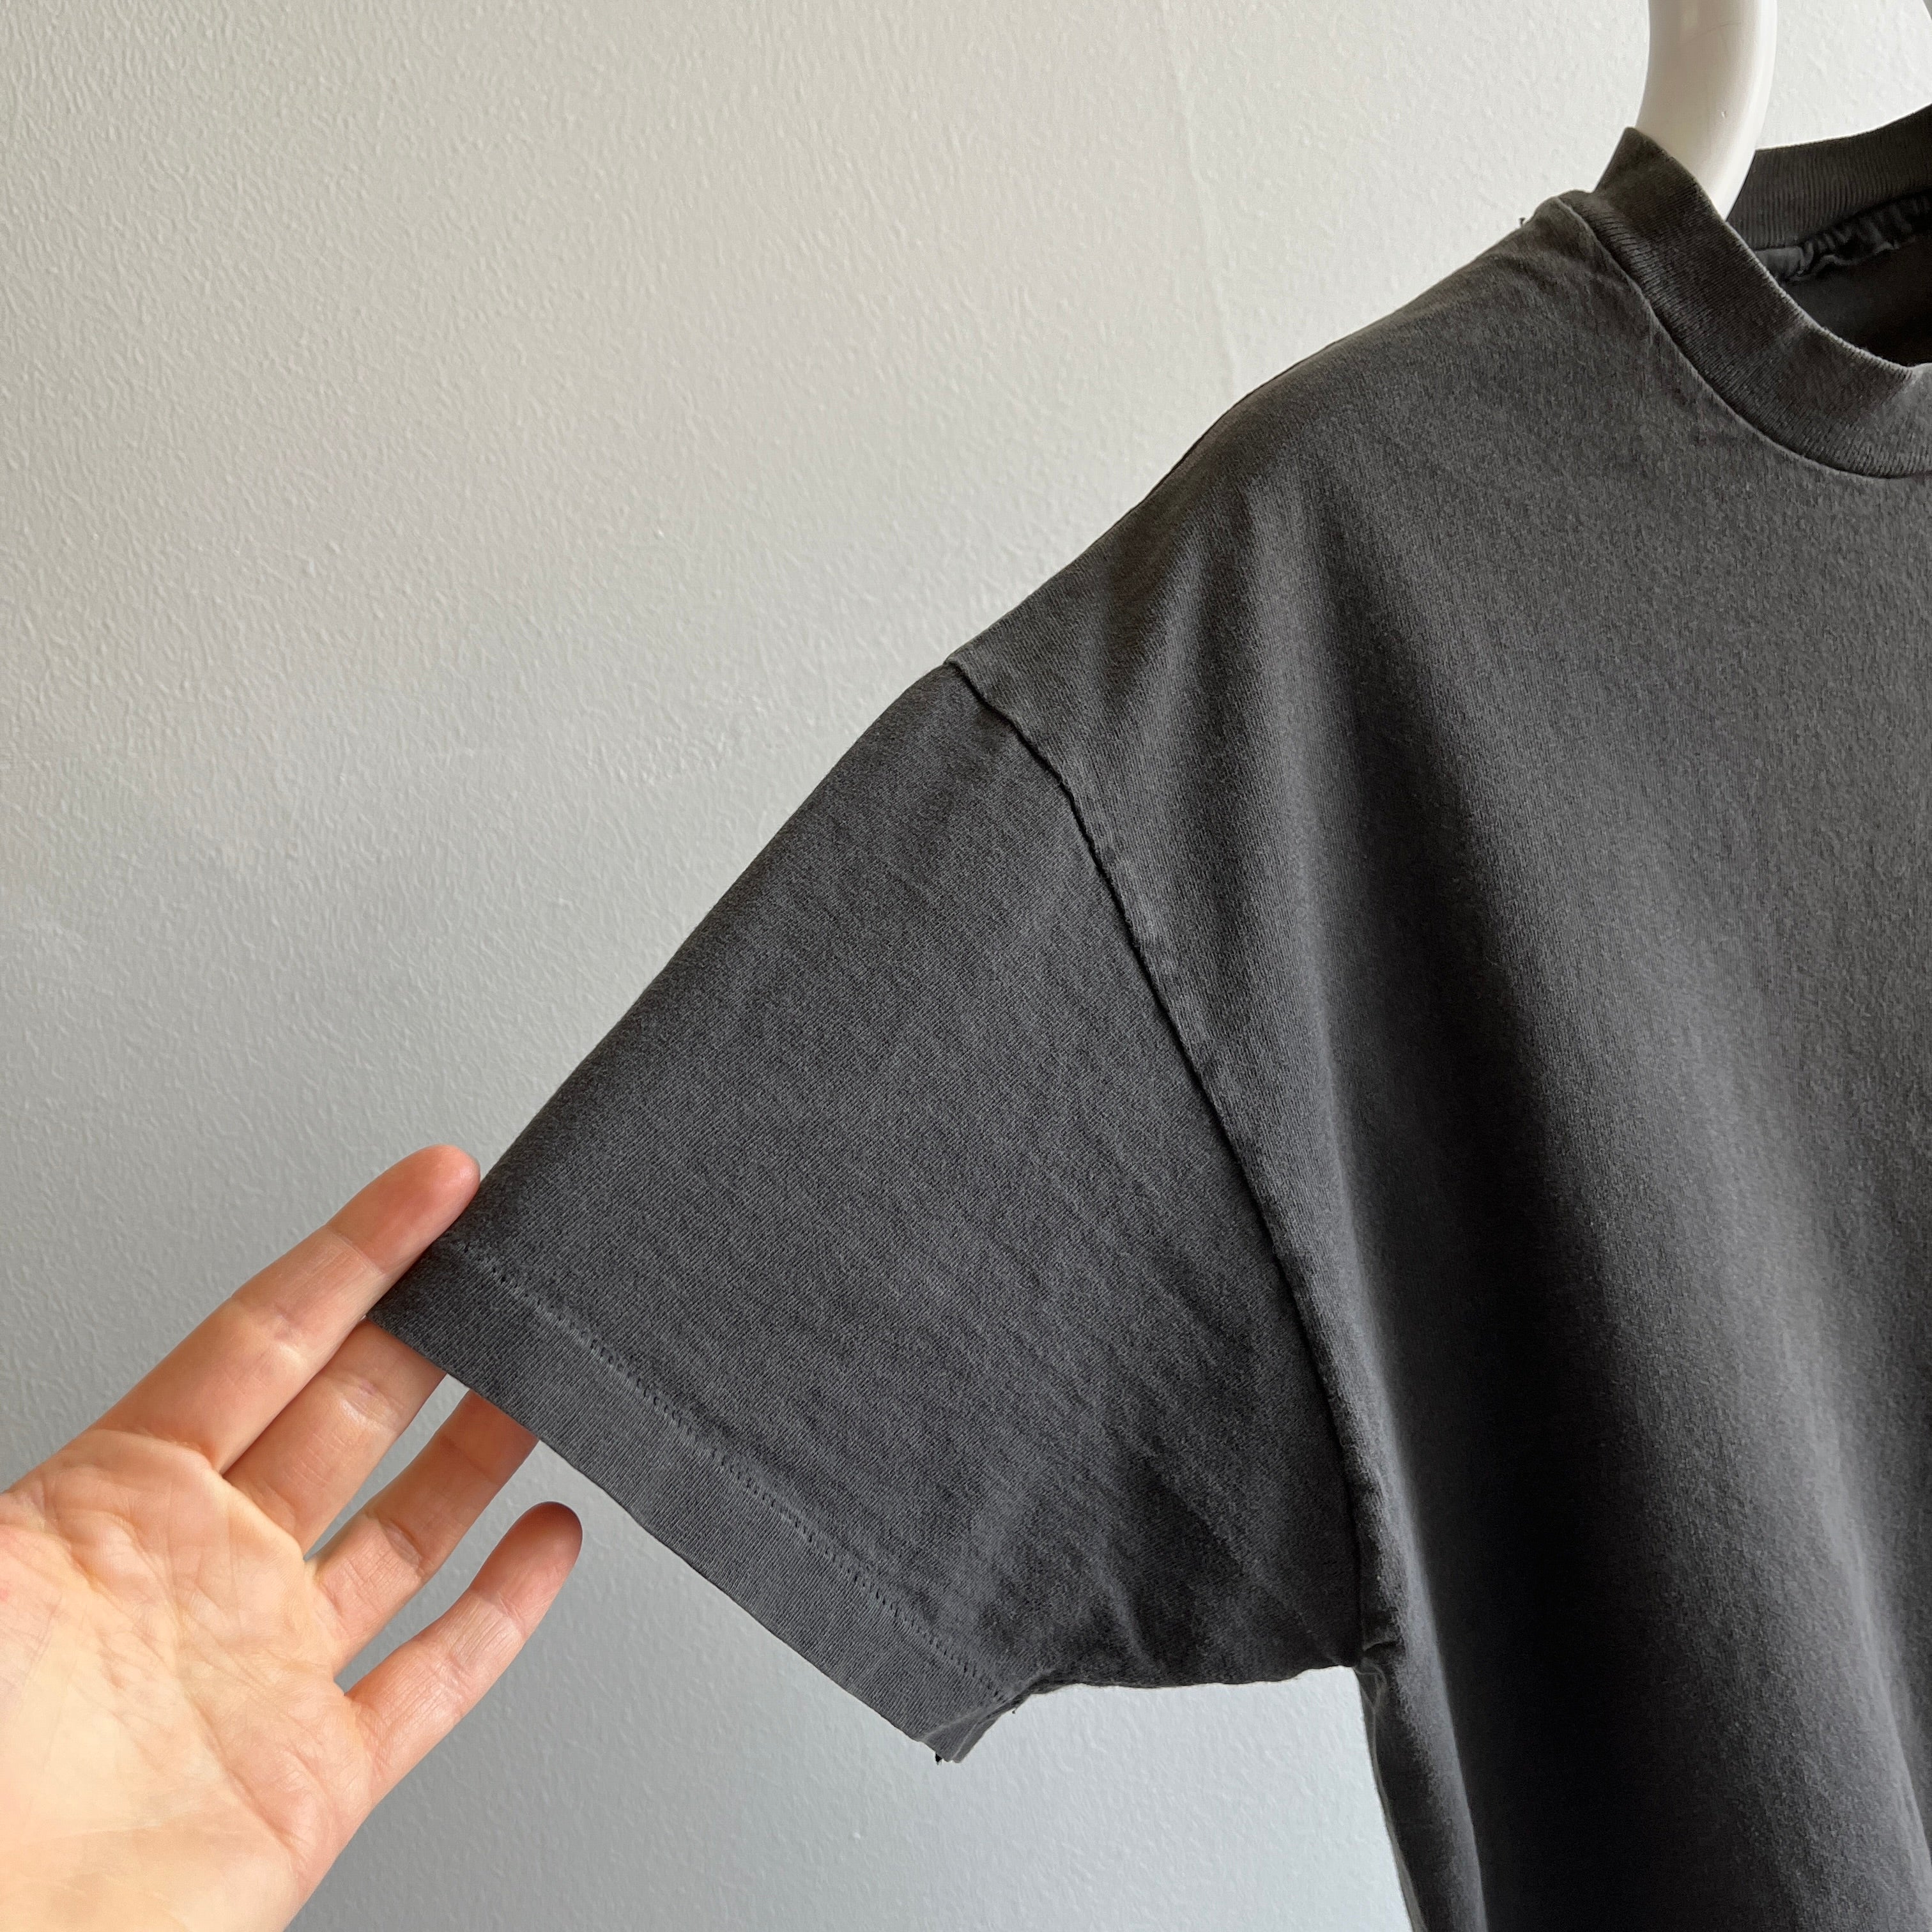 T-shirt de poche en coton noir parfaitement fané des années 1990